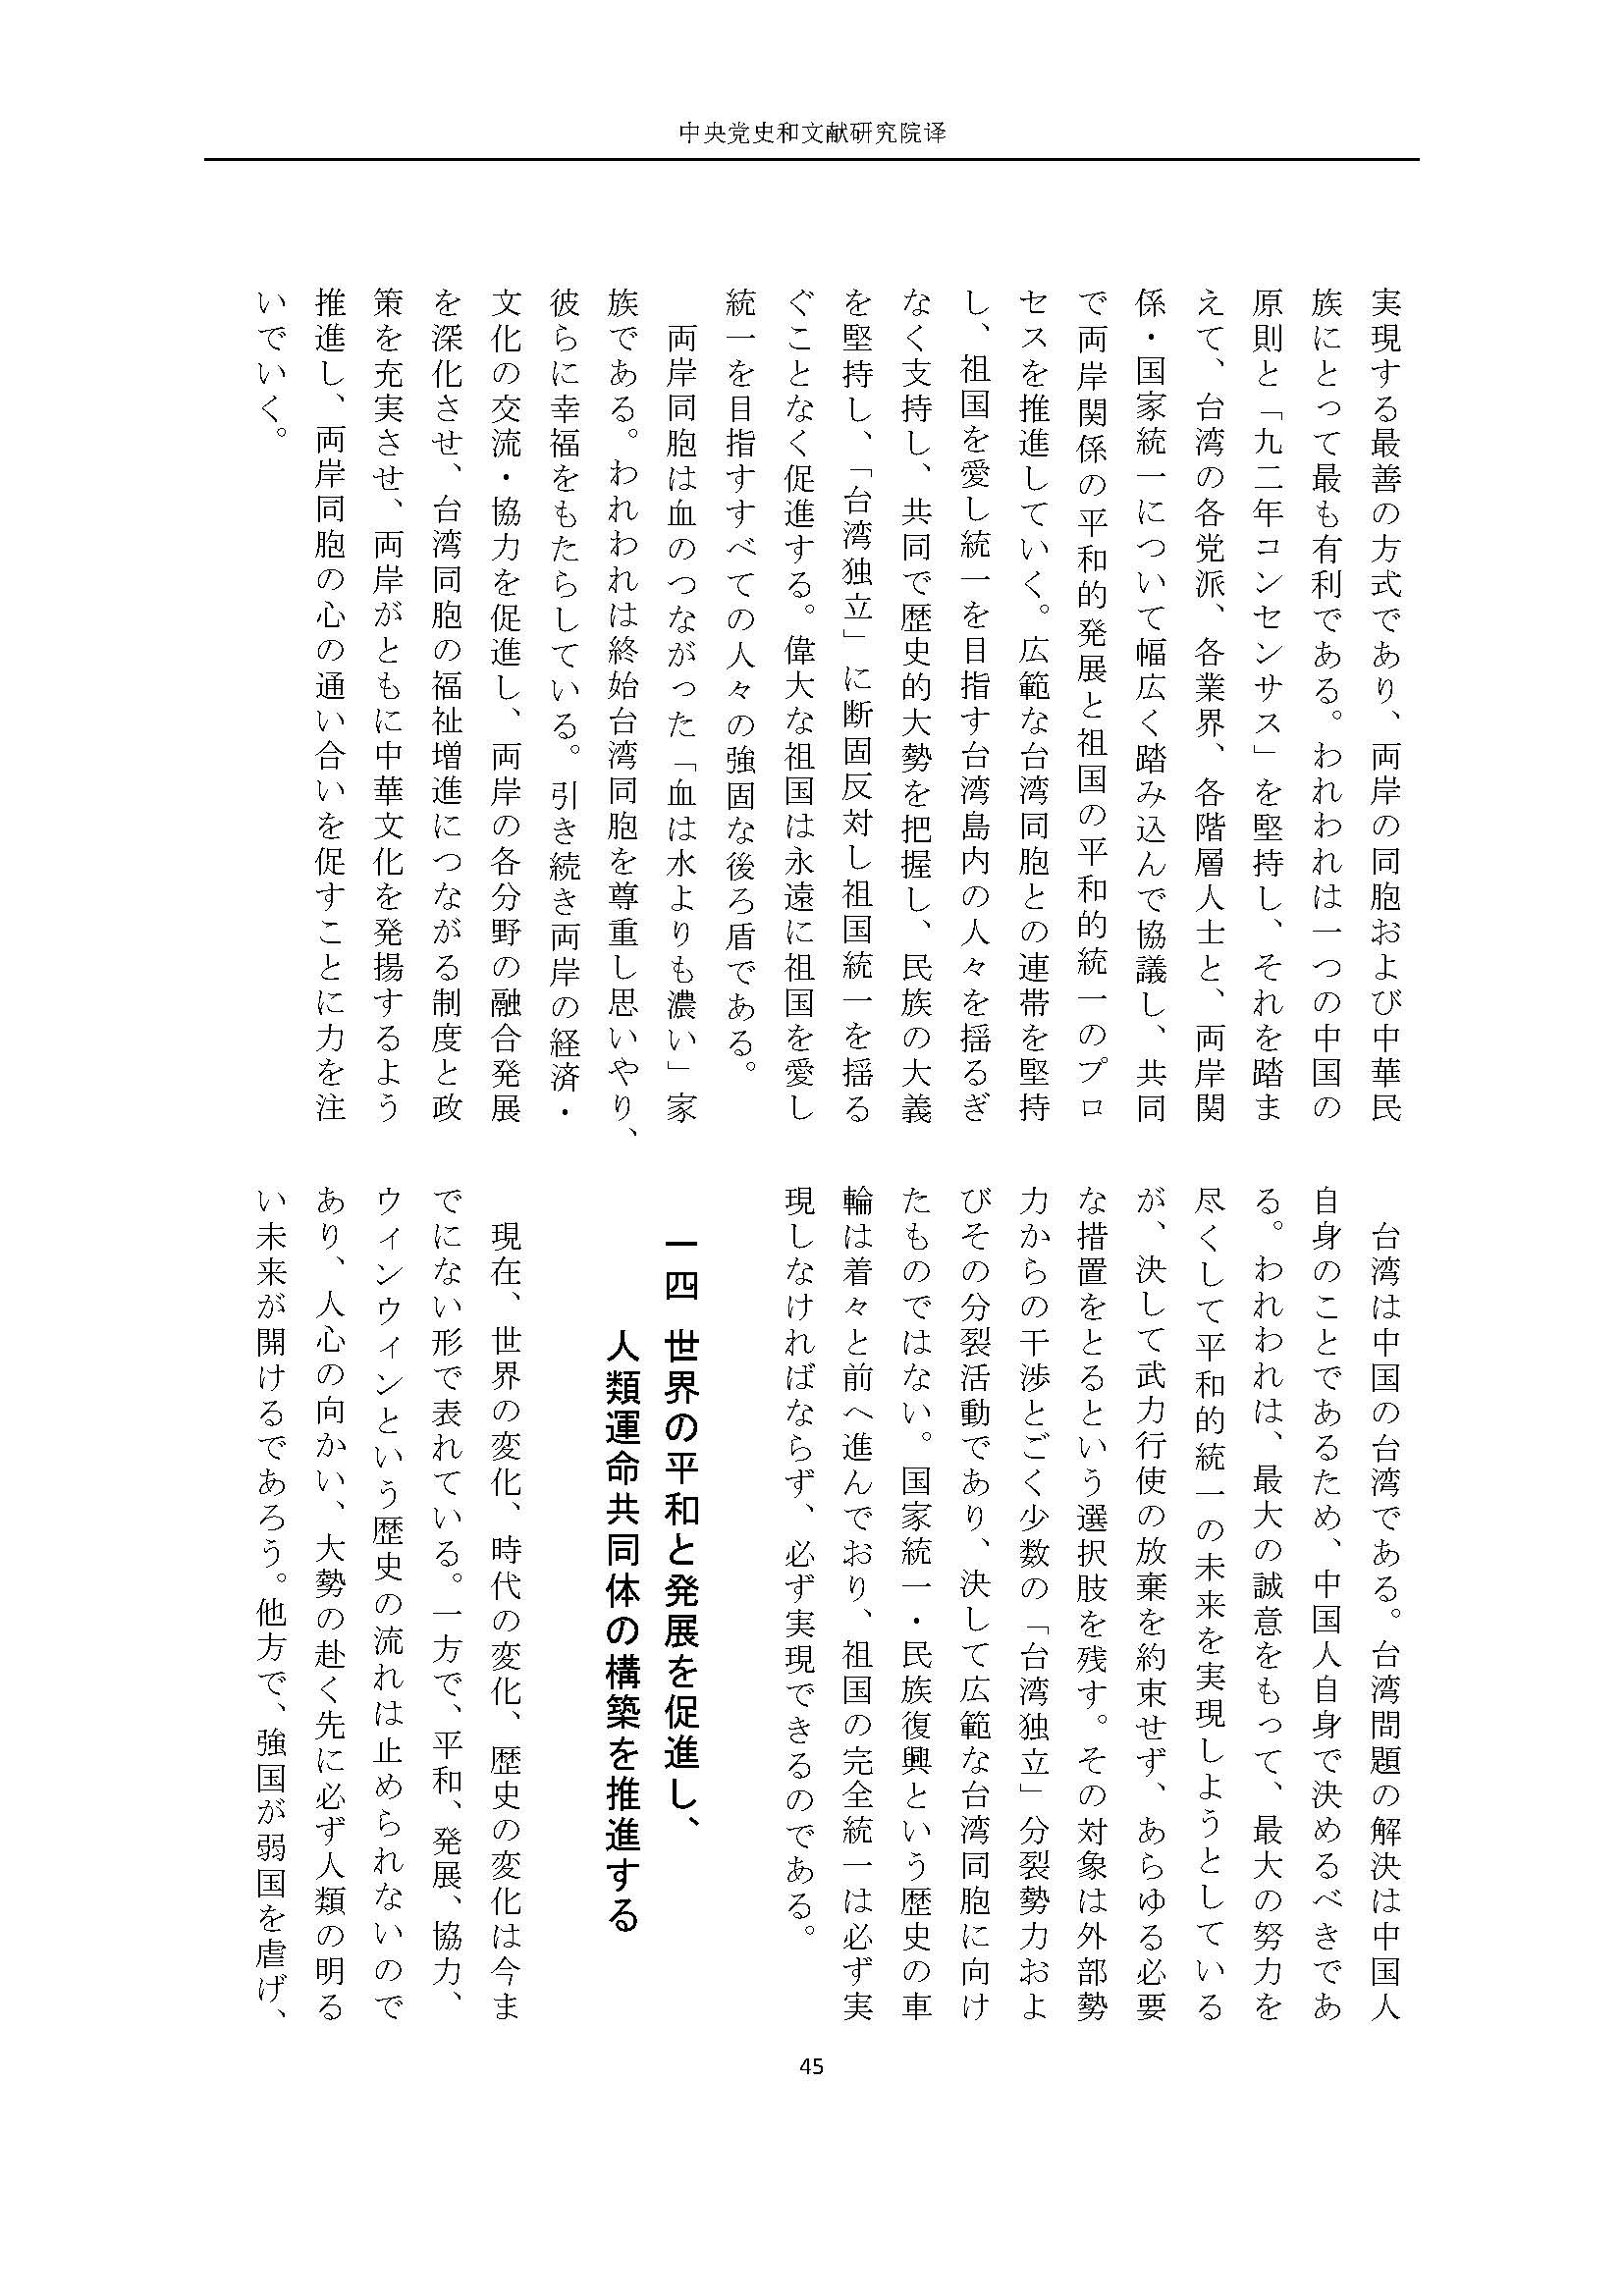 二十大报告（日文全文）_页面_46